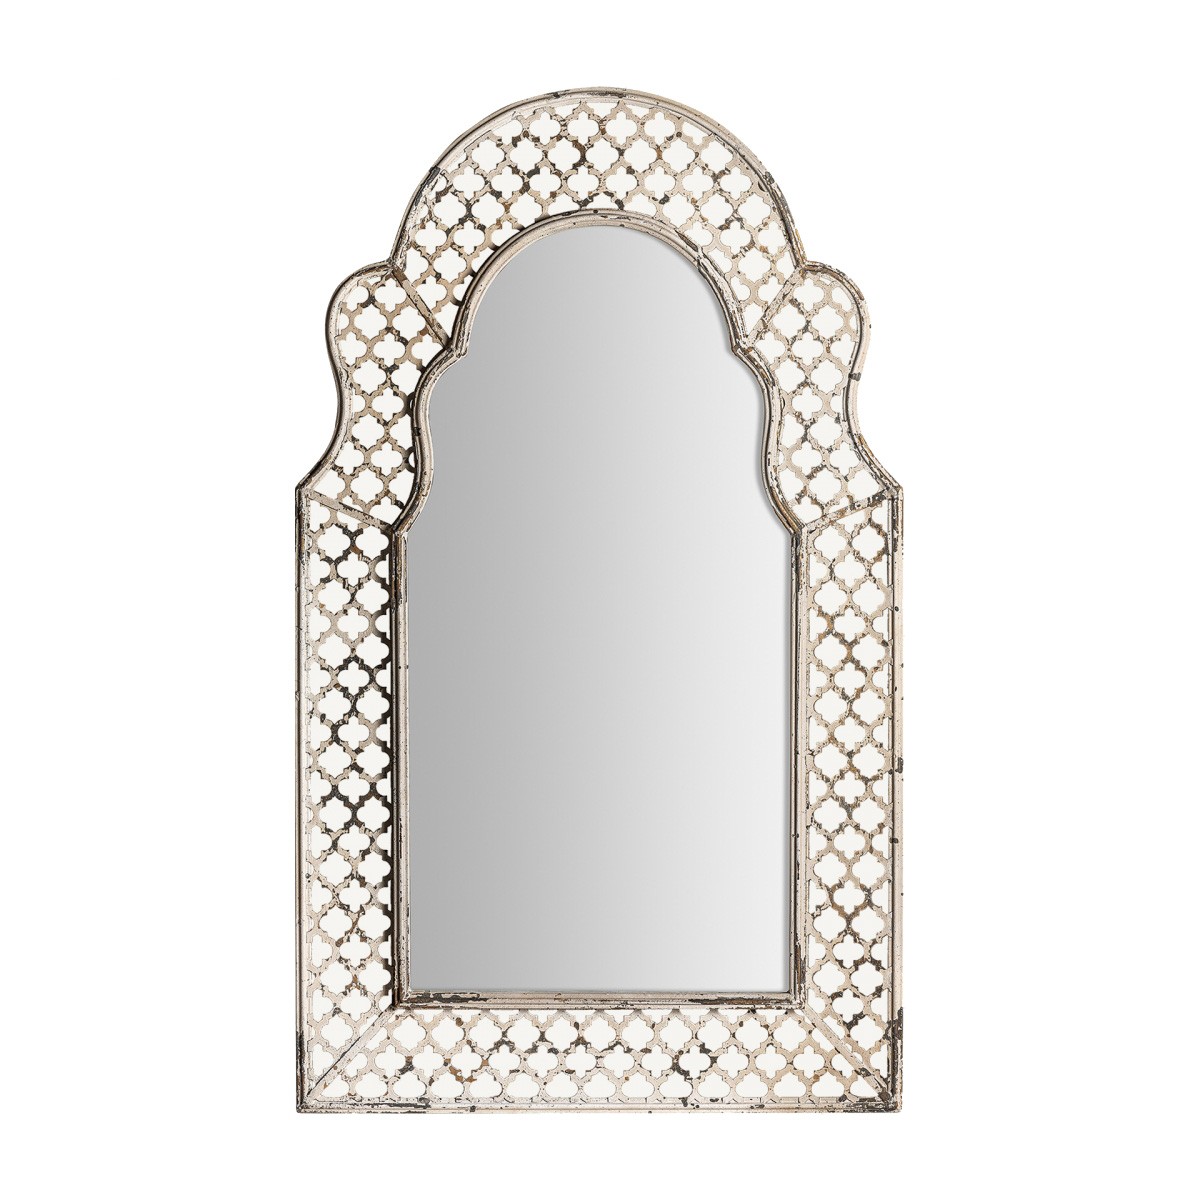 Estila Provence luxusní nástěnné zrcadlo Melisandry s ozdobným rámem z kovu šedé barvy s patinou 130cm